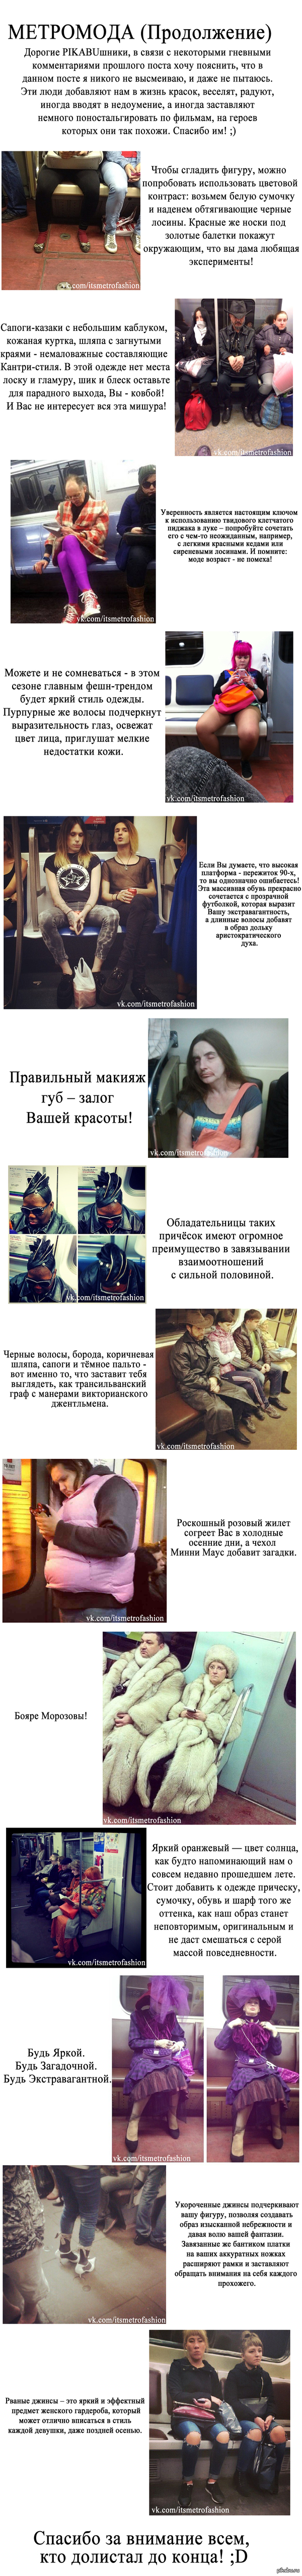   ()             ! ;)      <a href="http://pikabu.ru/story/moda_metro_2827099.">http://pikabu.ru/story/_2827099</a>